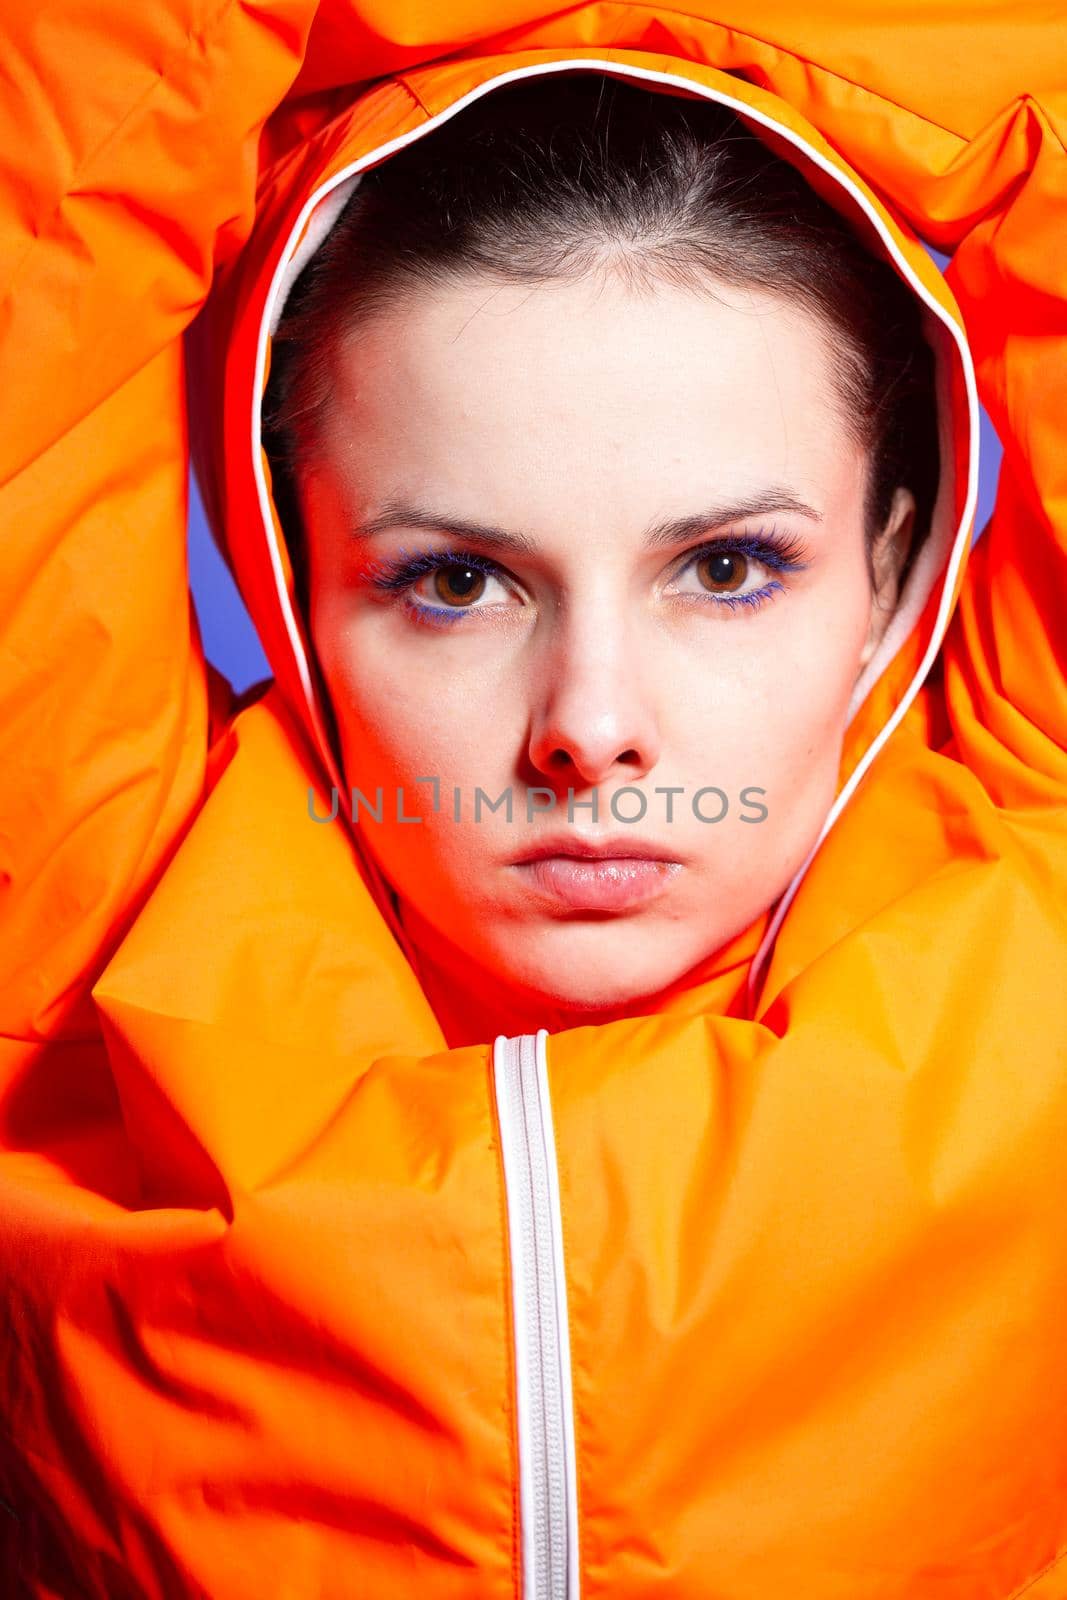 brunette woman in orange jacket, blue background by shilovskaya